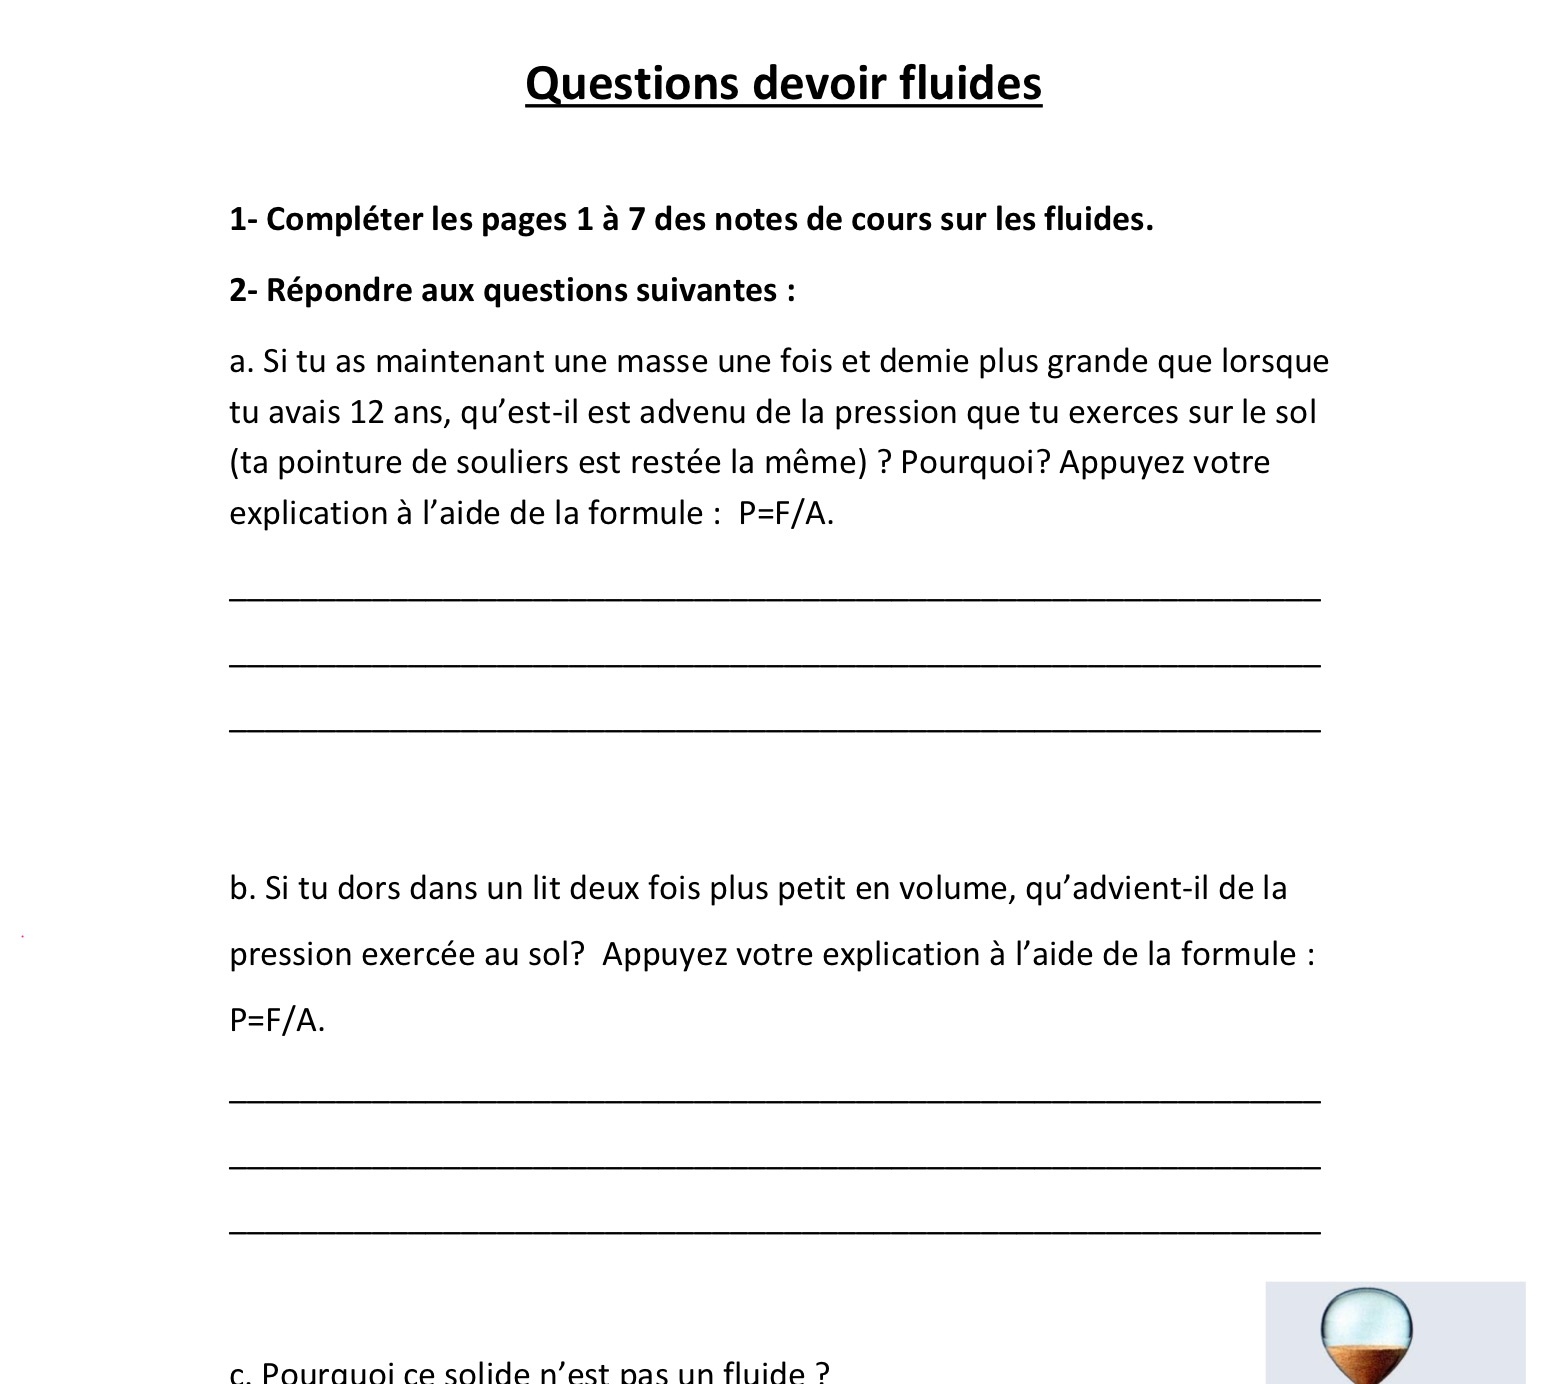 Questions devoir fluides.png